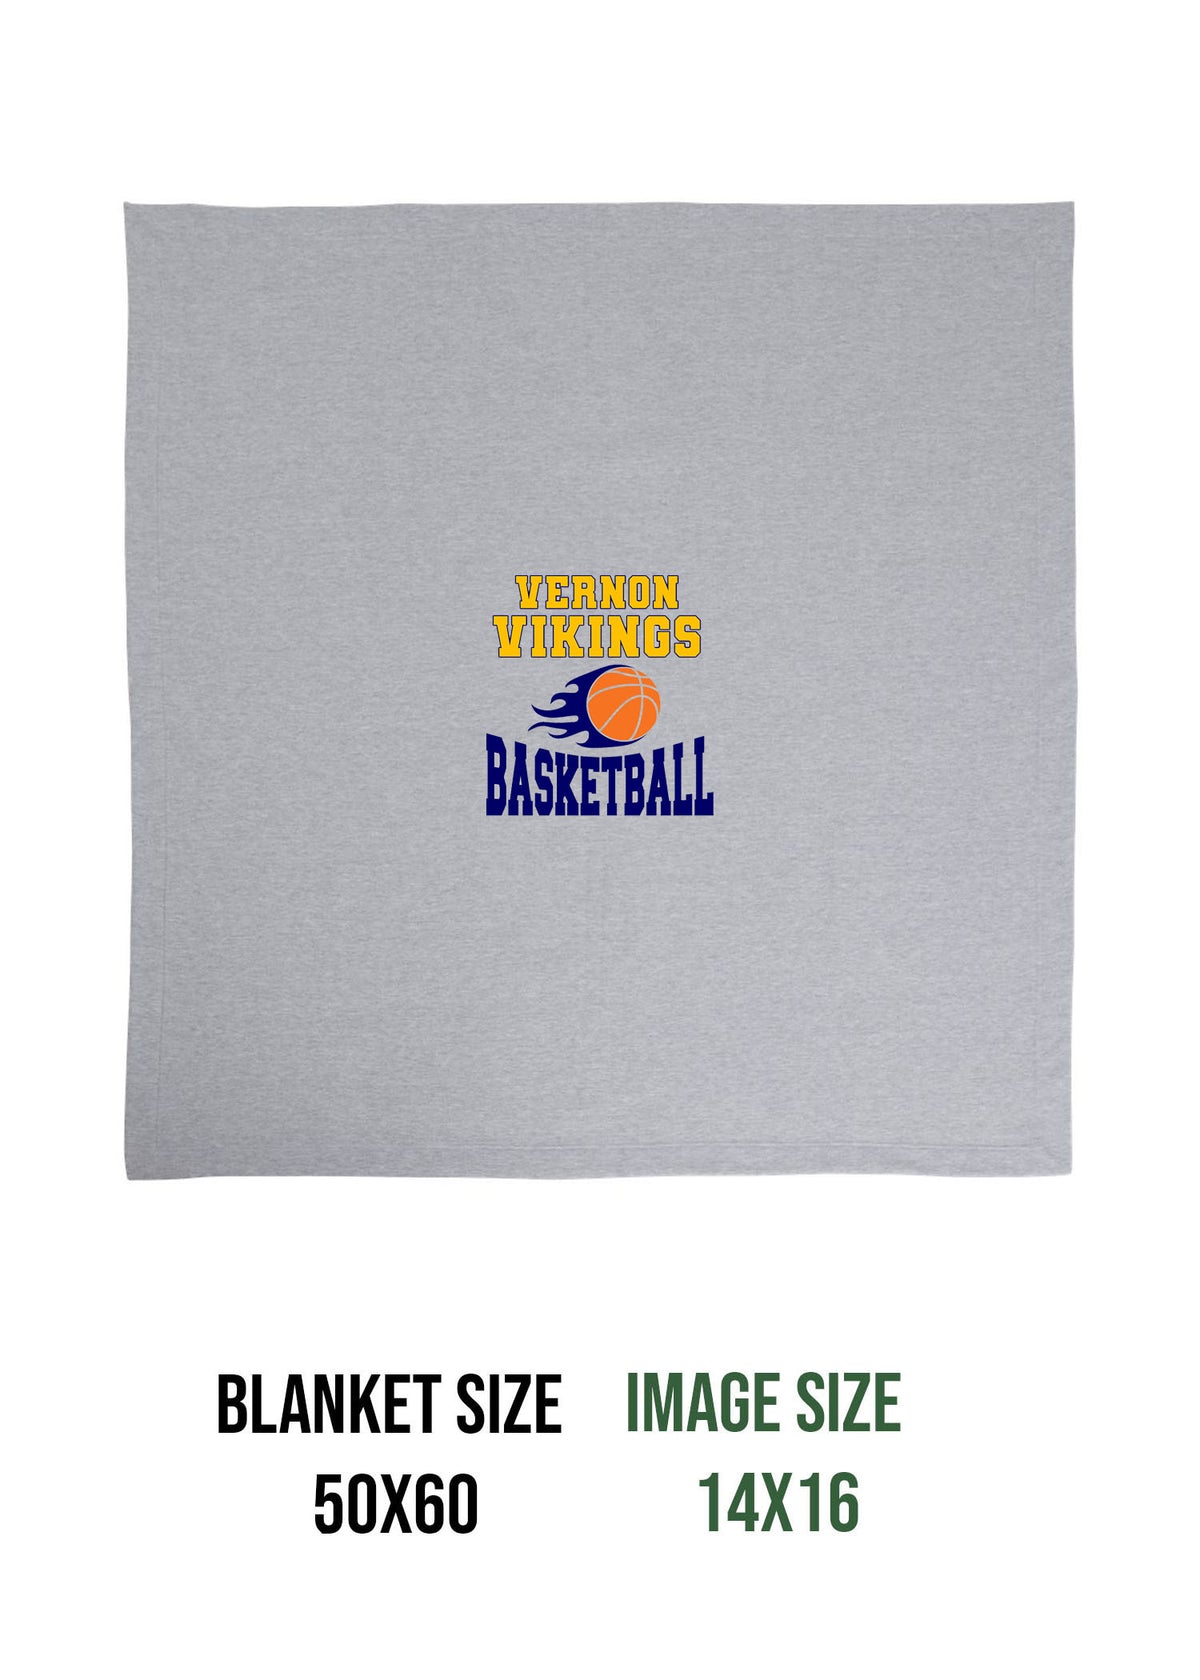 Vikings Basketball Design 4 Blanket